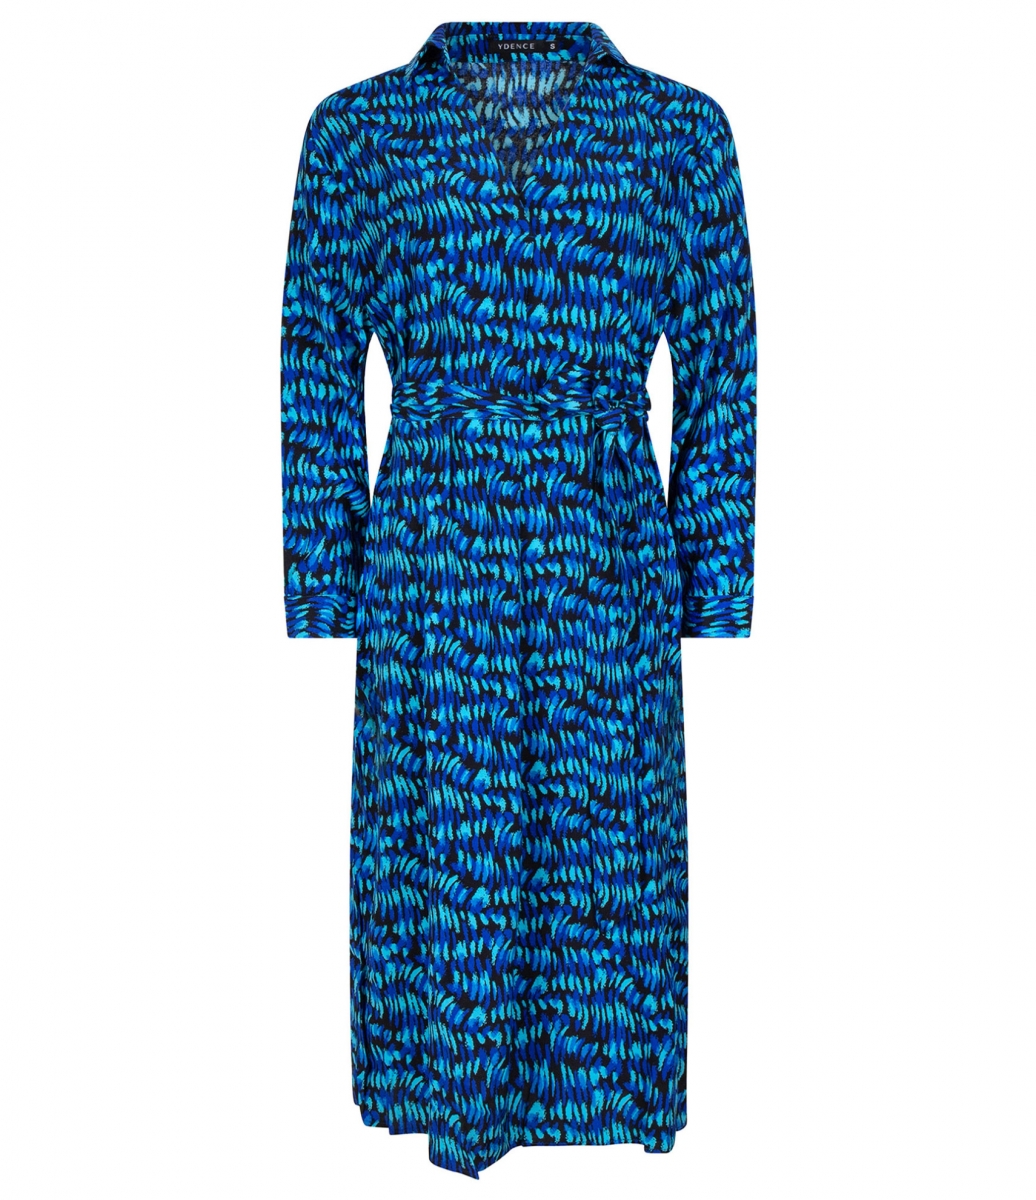 Dress Kindra Blue Print